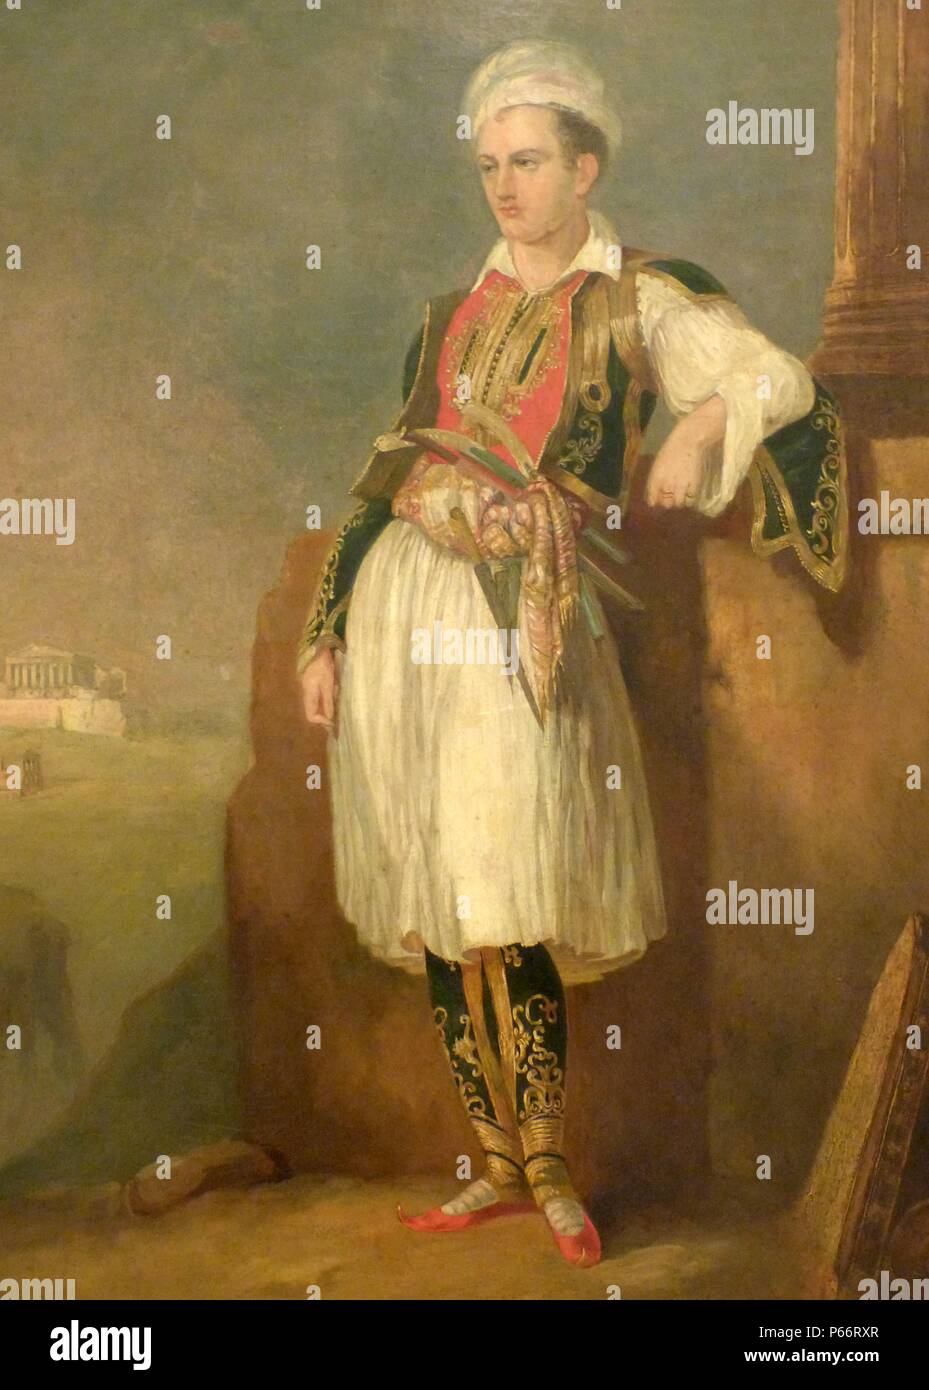 Portrait de lord Byron (1788-1824), habillés en costume grec et avec l'acropole d'Athènes dans l'arrière-plan. Huile sur toile, vers 1830, dans le Musée Benaki, Athènes, Grèce. Banque D'Images